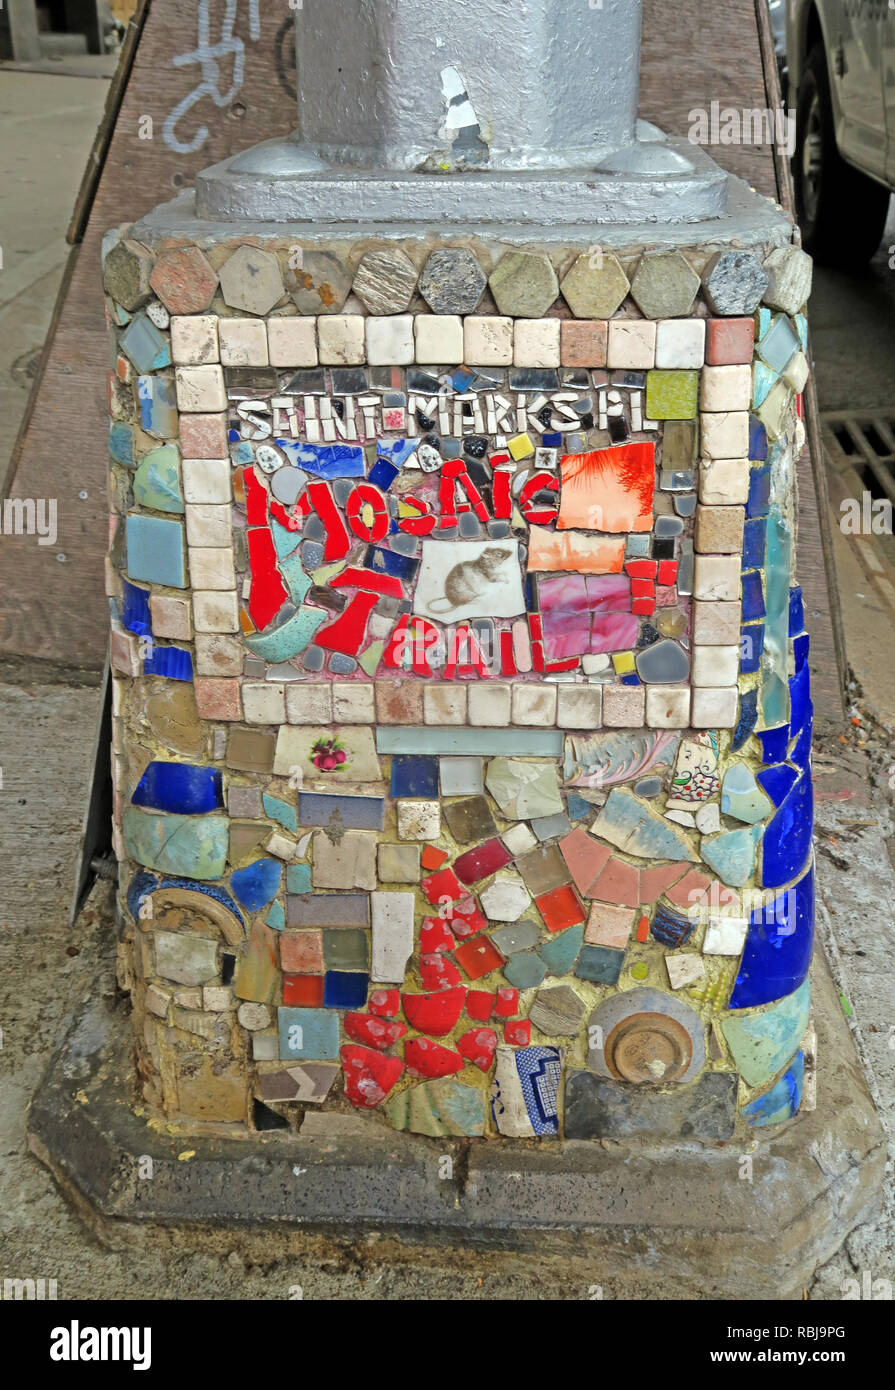 Saint Marks Place Mosaic Trail, East Village, New York city, NYC, NY, USA Stock Photo